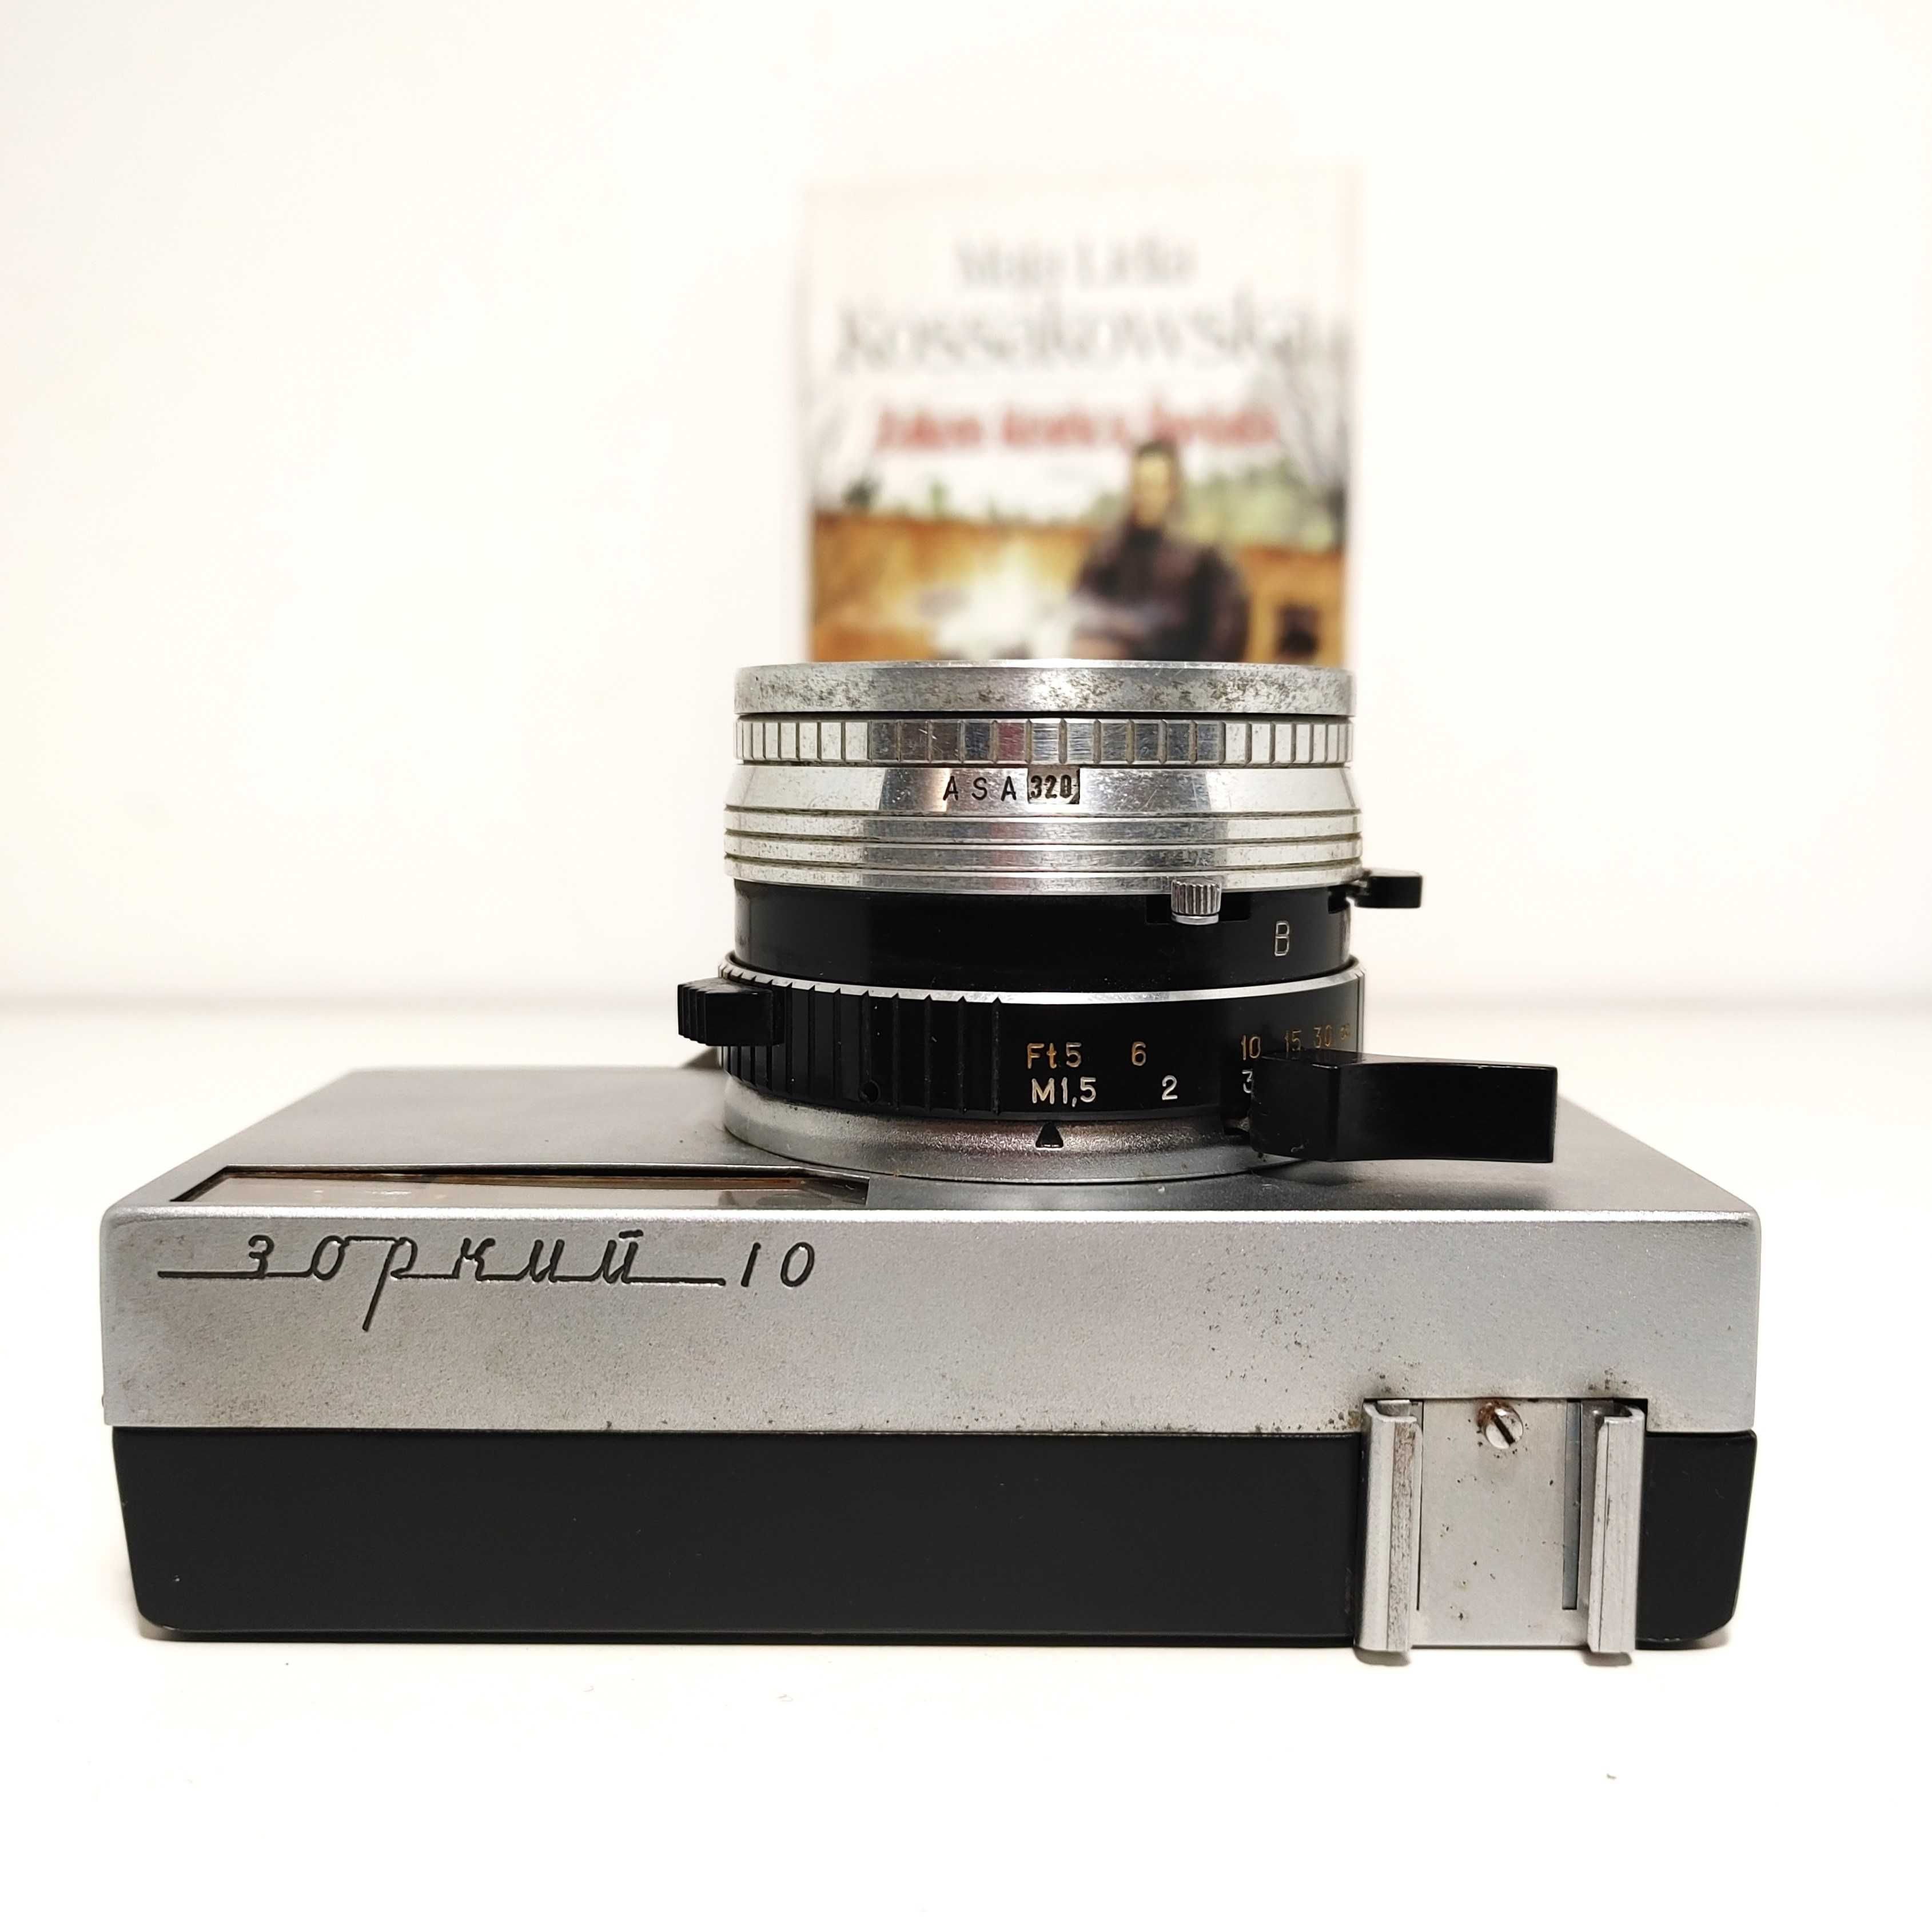 Analogowy aparat fotograficzny Zorki 10 z  Indrustial 63 1:2,8 45mm